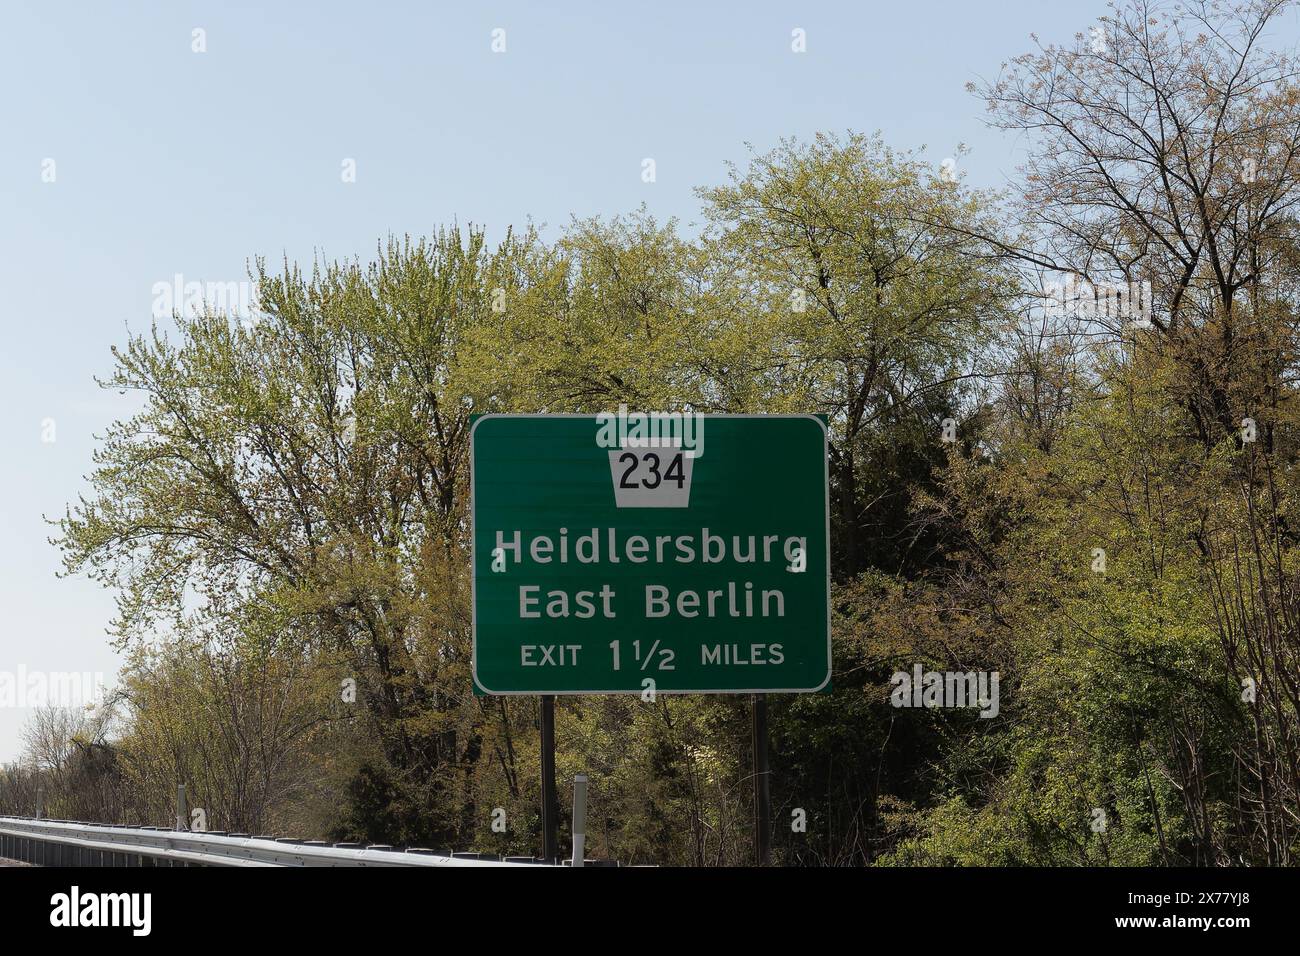 Panneau de sortie sur l'US-15 pour PA-234 vers Heidlersburg et East Berlin, Pennsylvanie Banque D'Images